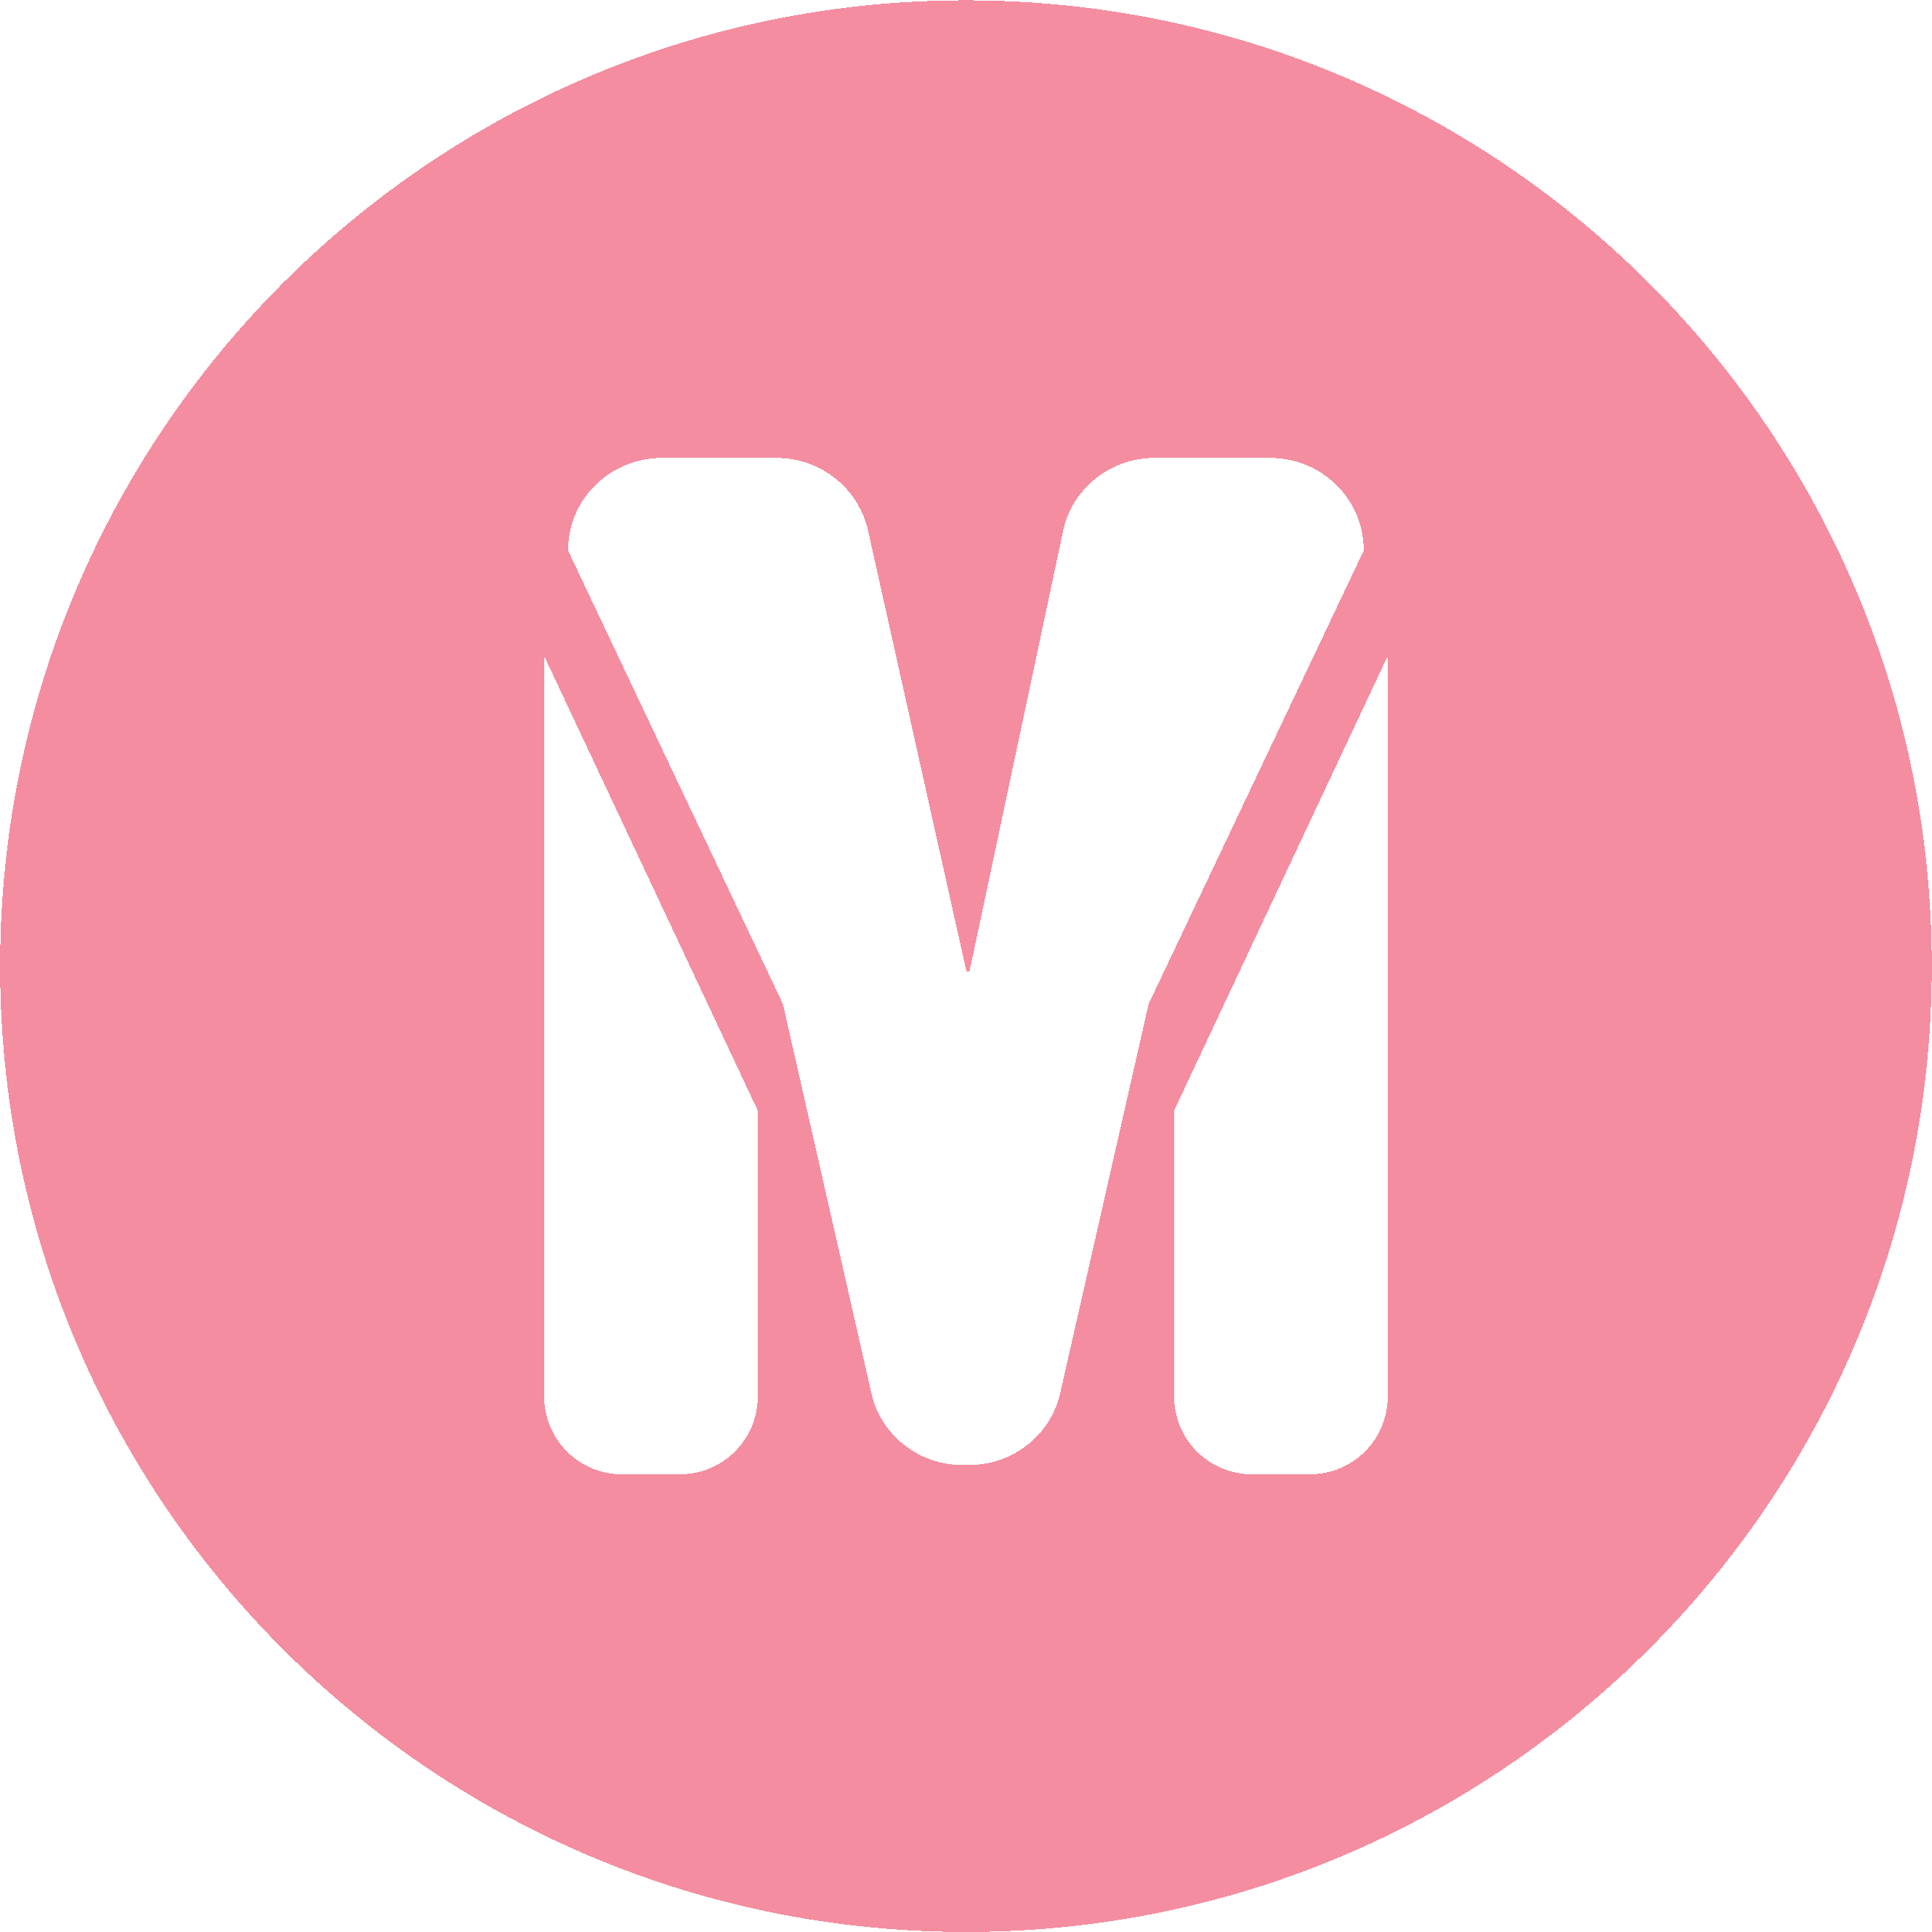 M symbol